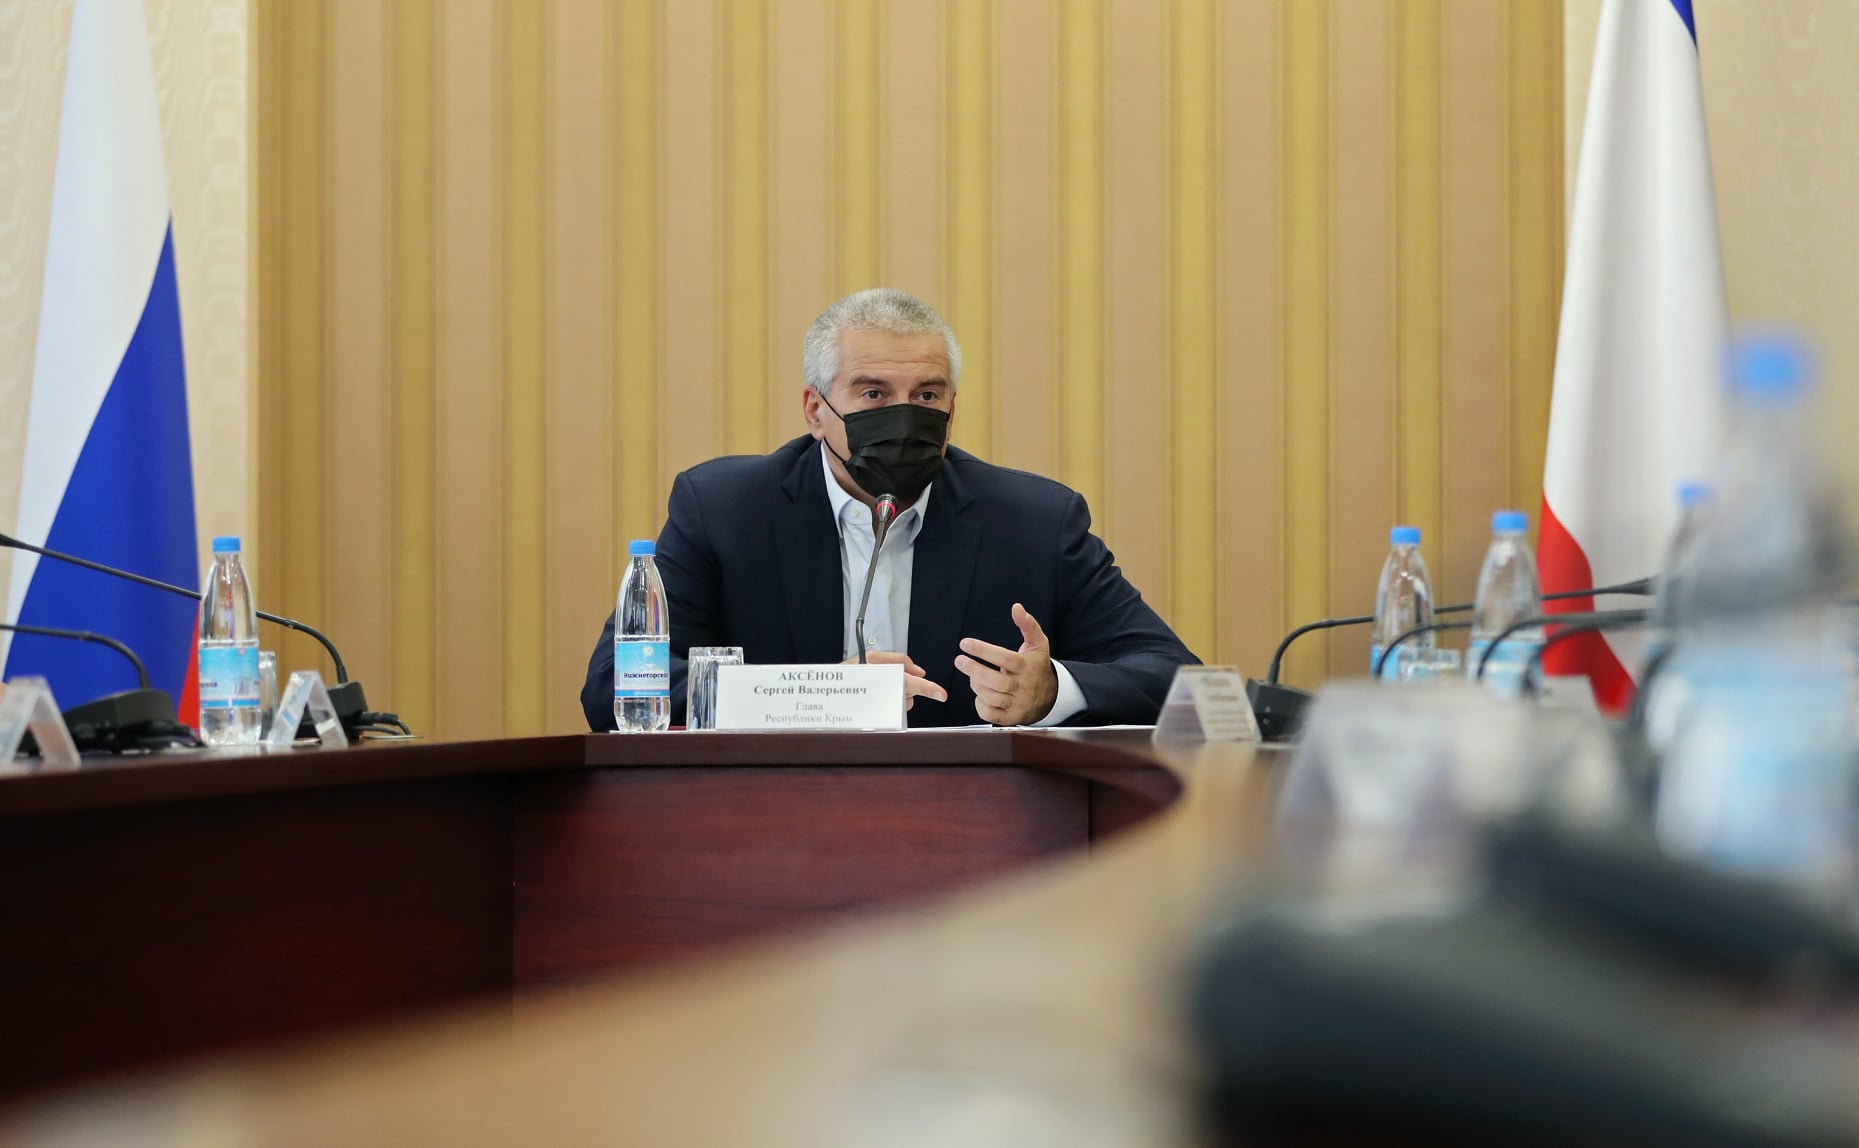 Аксенов заявил об увольнении мэра Сак за срыв сроков по нацпроектам